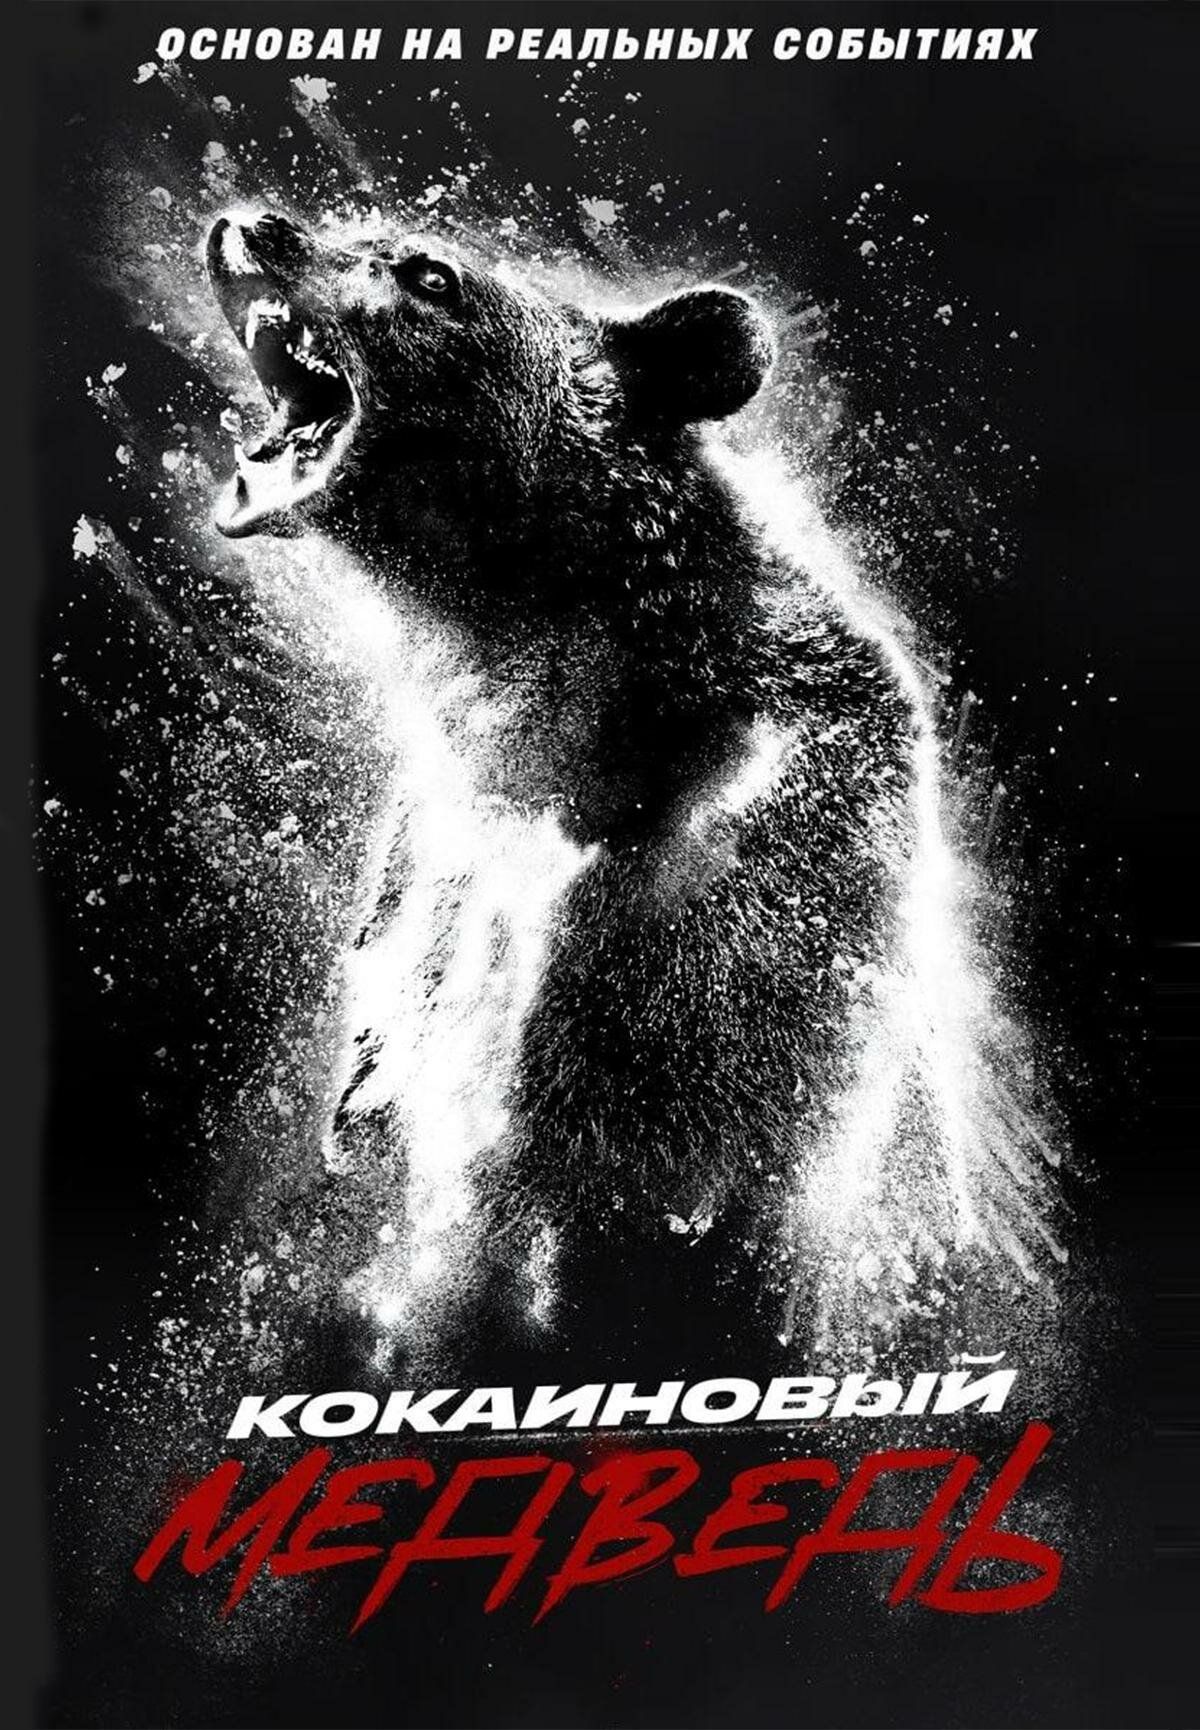 Постер к фильму Кокаиновый медведь / Cocaine Bear (2023) UHD WEB-DL 2160p от селезень | 4K | HDR | Dolby Vision Profile 8 | D